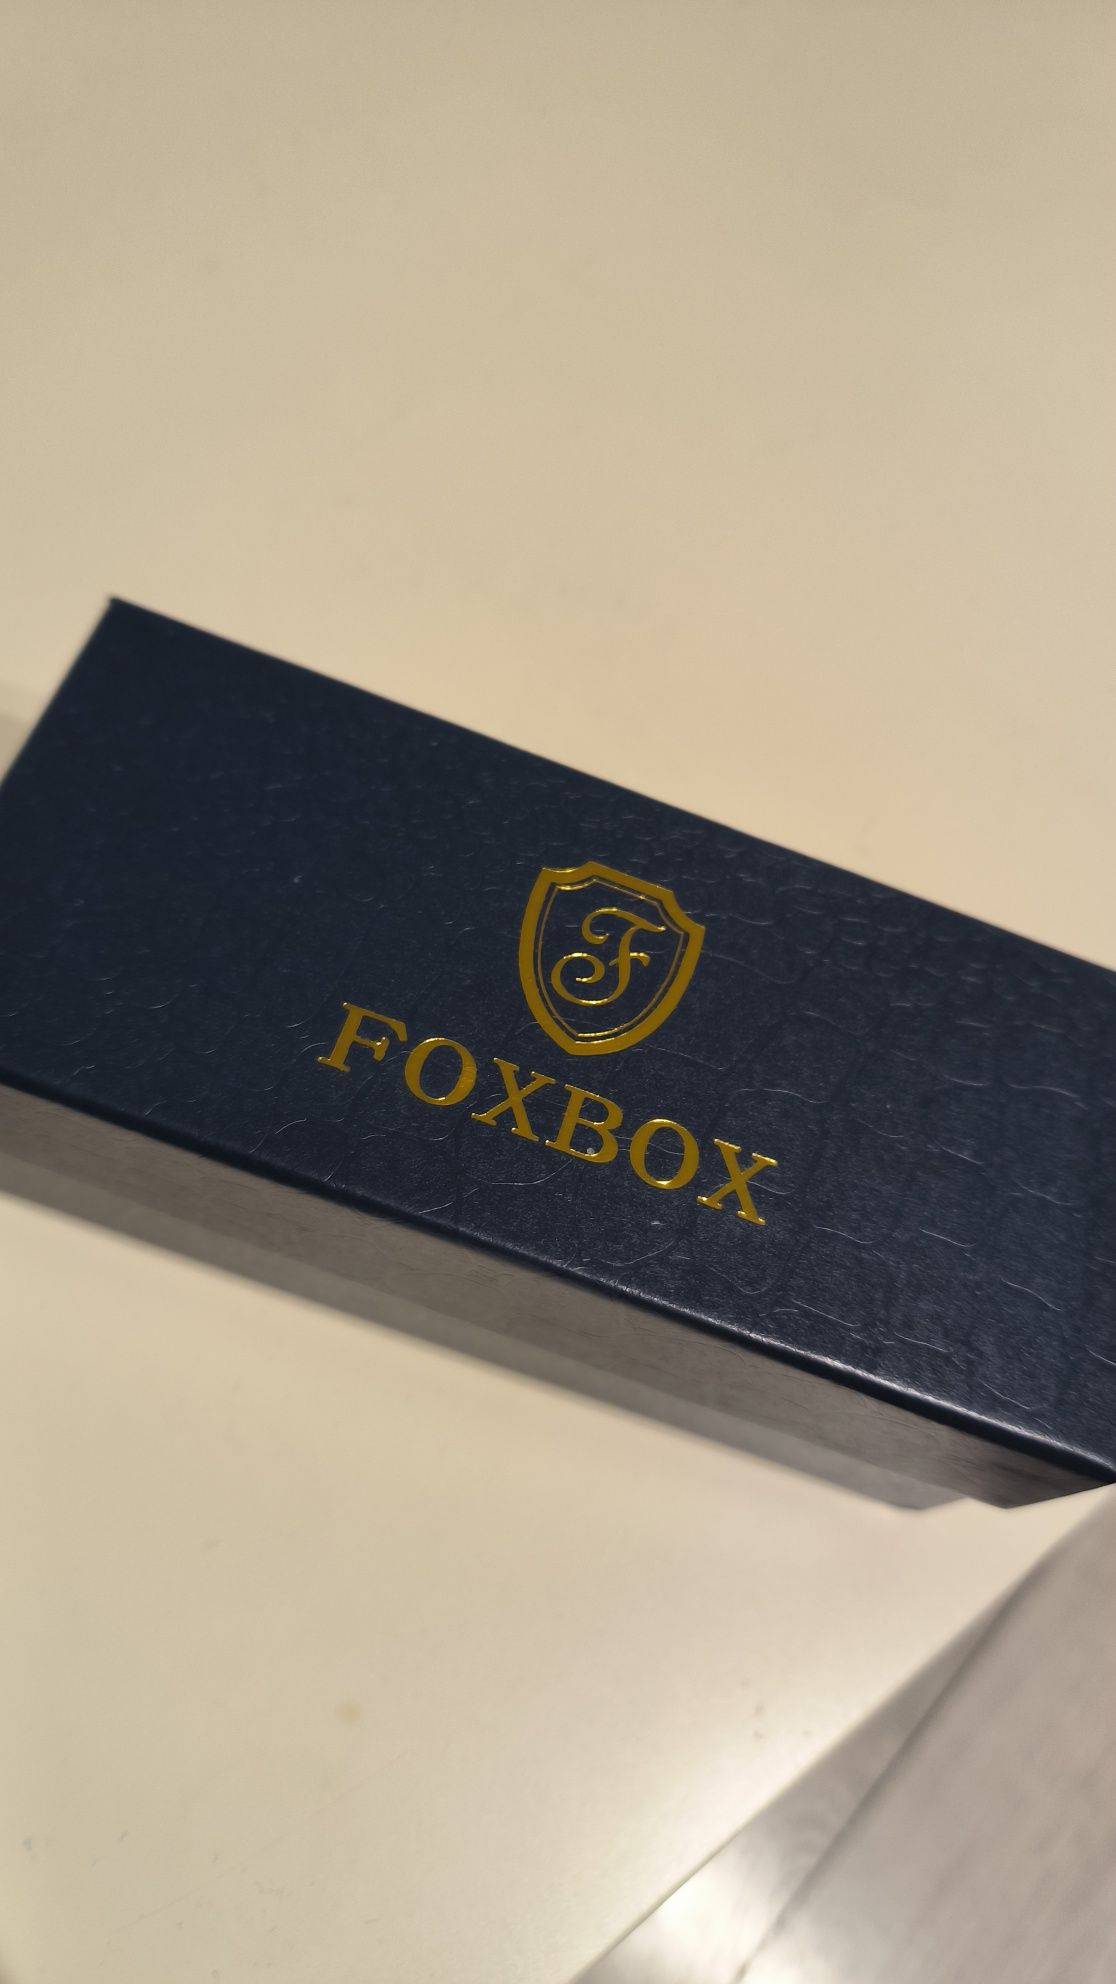 Foxbox jak casio nowy